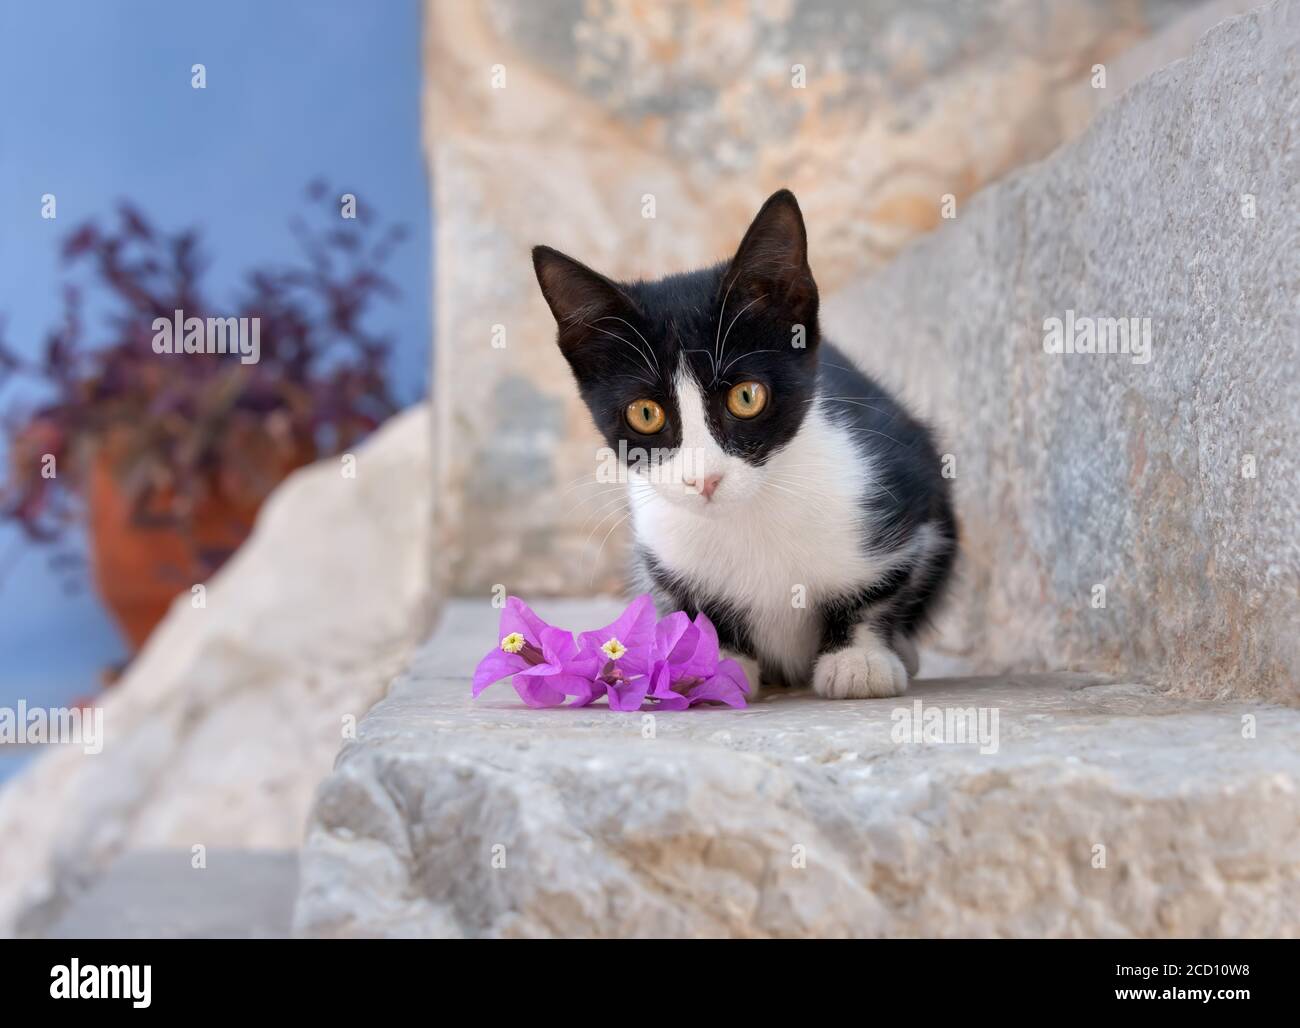 Un carino gattino gatto, bicolore nero e bianco, in posa su un passo di pietra con fiori e guardando curiosamente, l'isola greca Symi, Dodecanese, Grecia Foto Stock